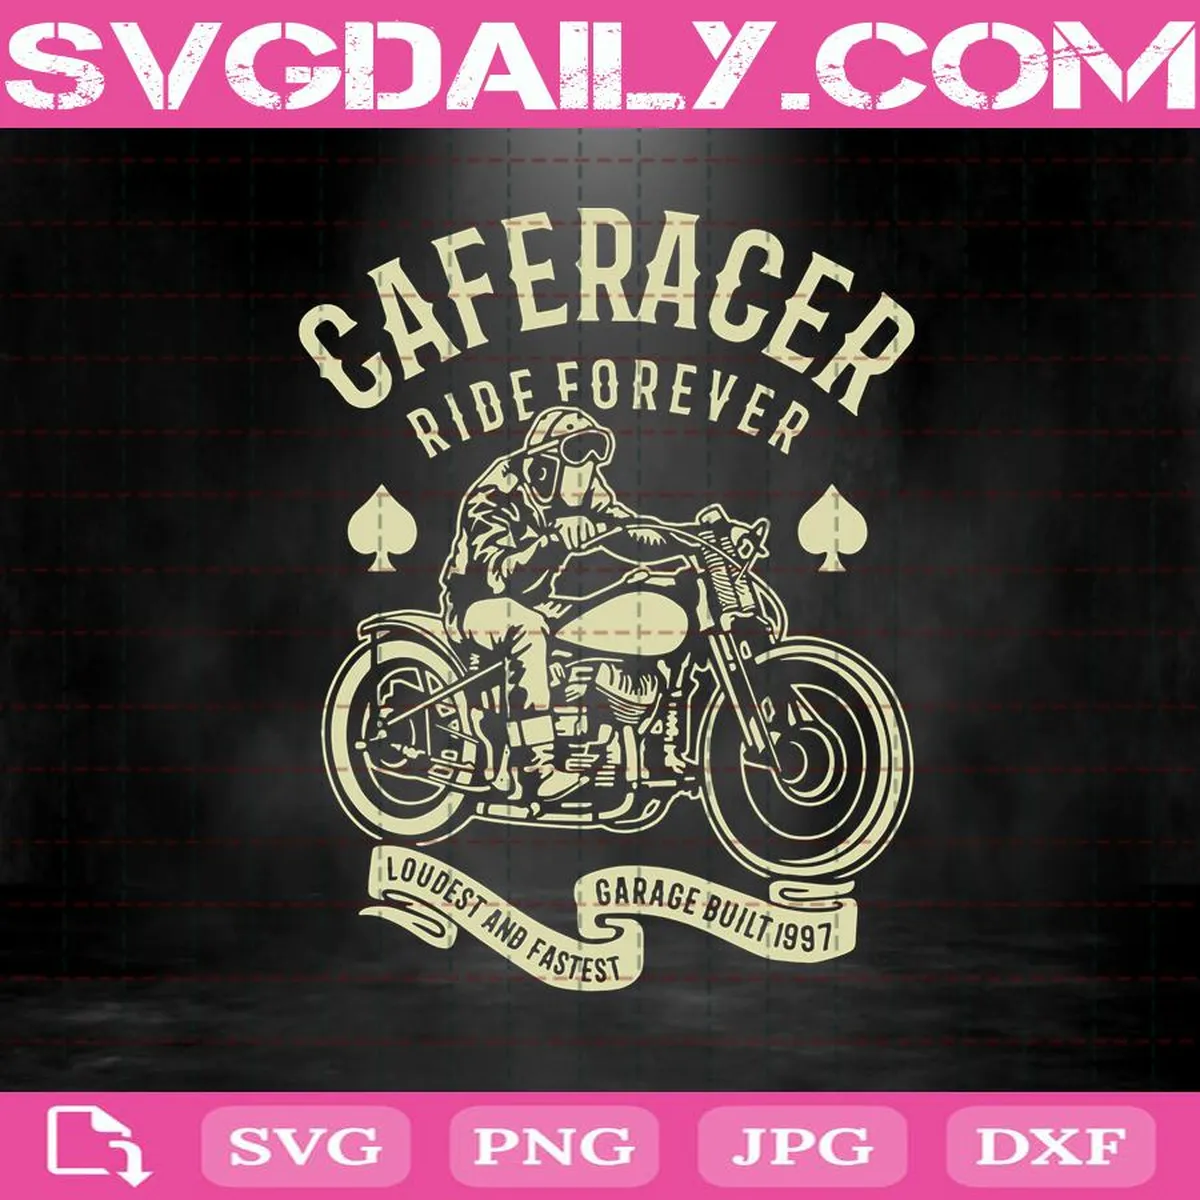 Caferacer Ride Forever Svg, Trending Svg, Caferacer Svg, Racer Svg, Vintage Racer Svg, Retro Racer Svg, Motorcycle Svg